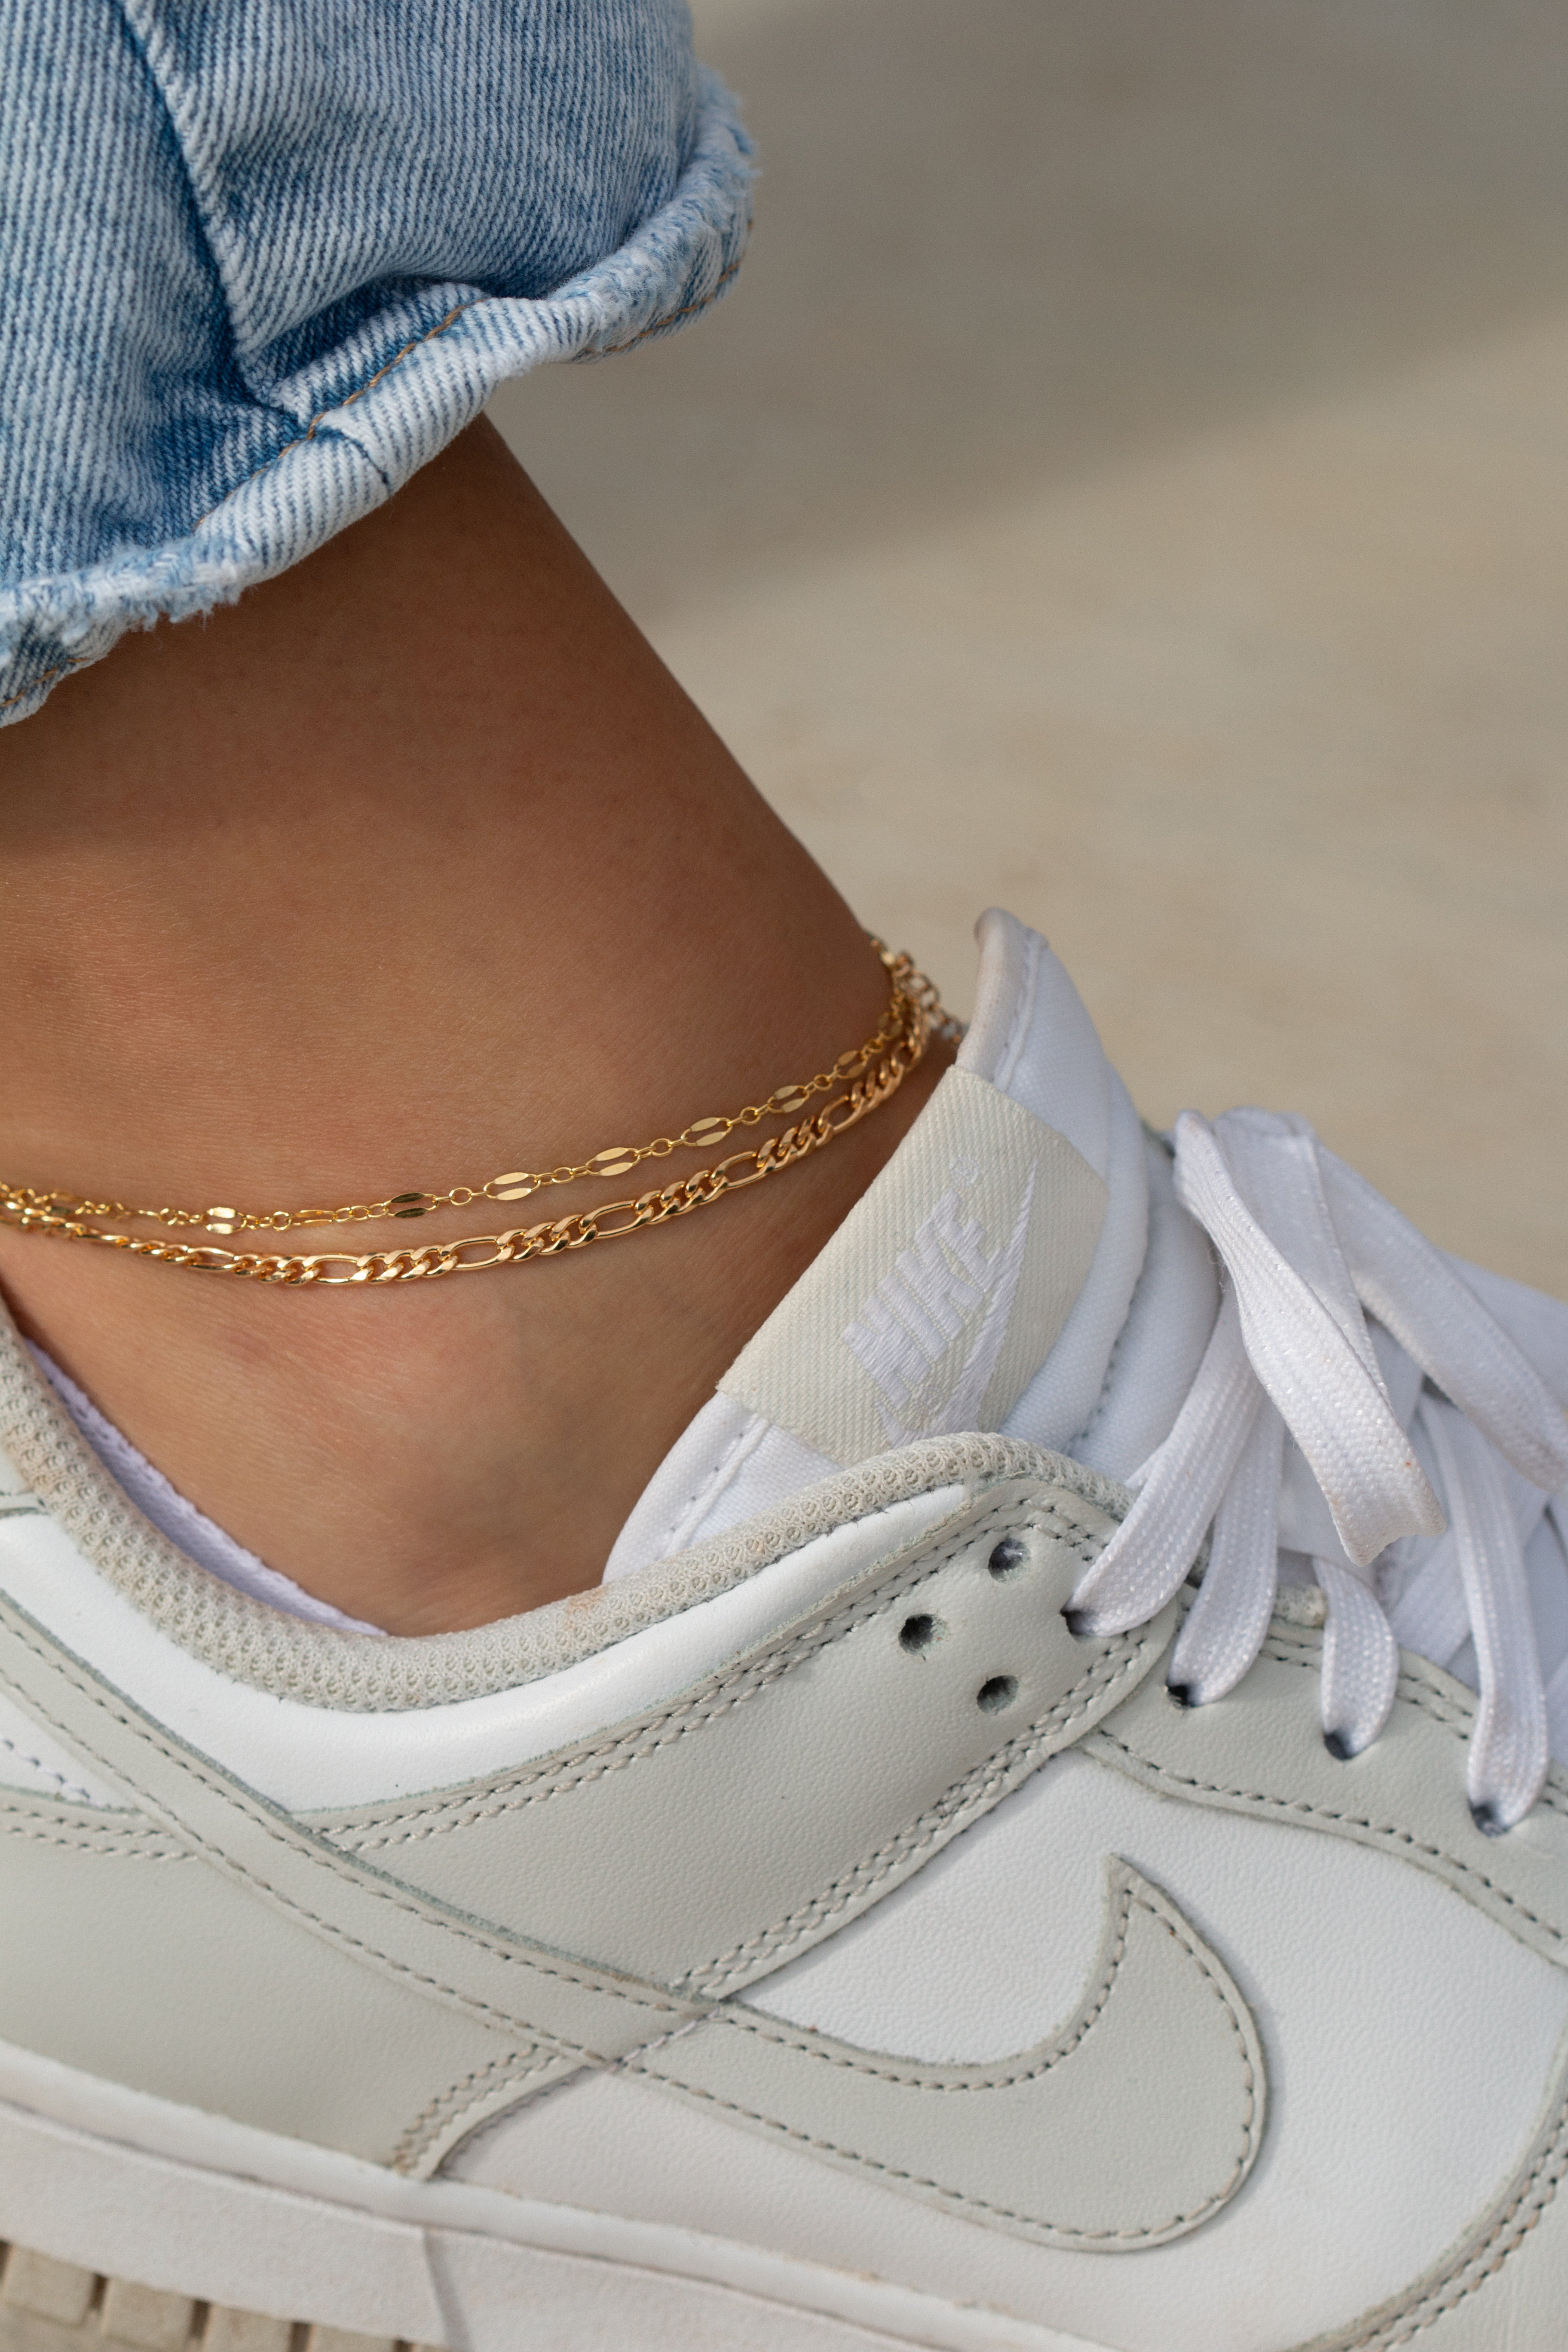 Dainty anklet, dainty gold anklet, dainty anklet gold, gold filled anklet, water resistant anklet, gold filled anklet,